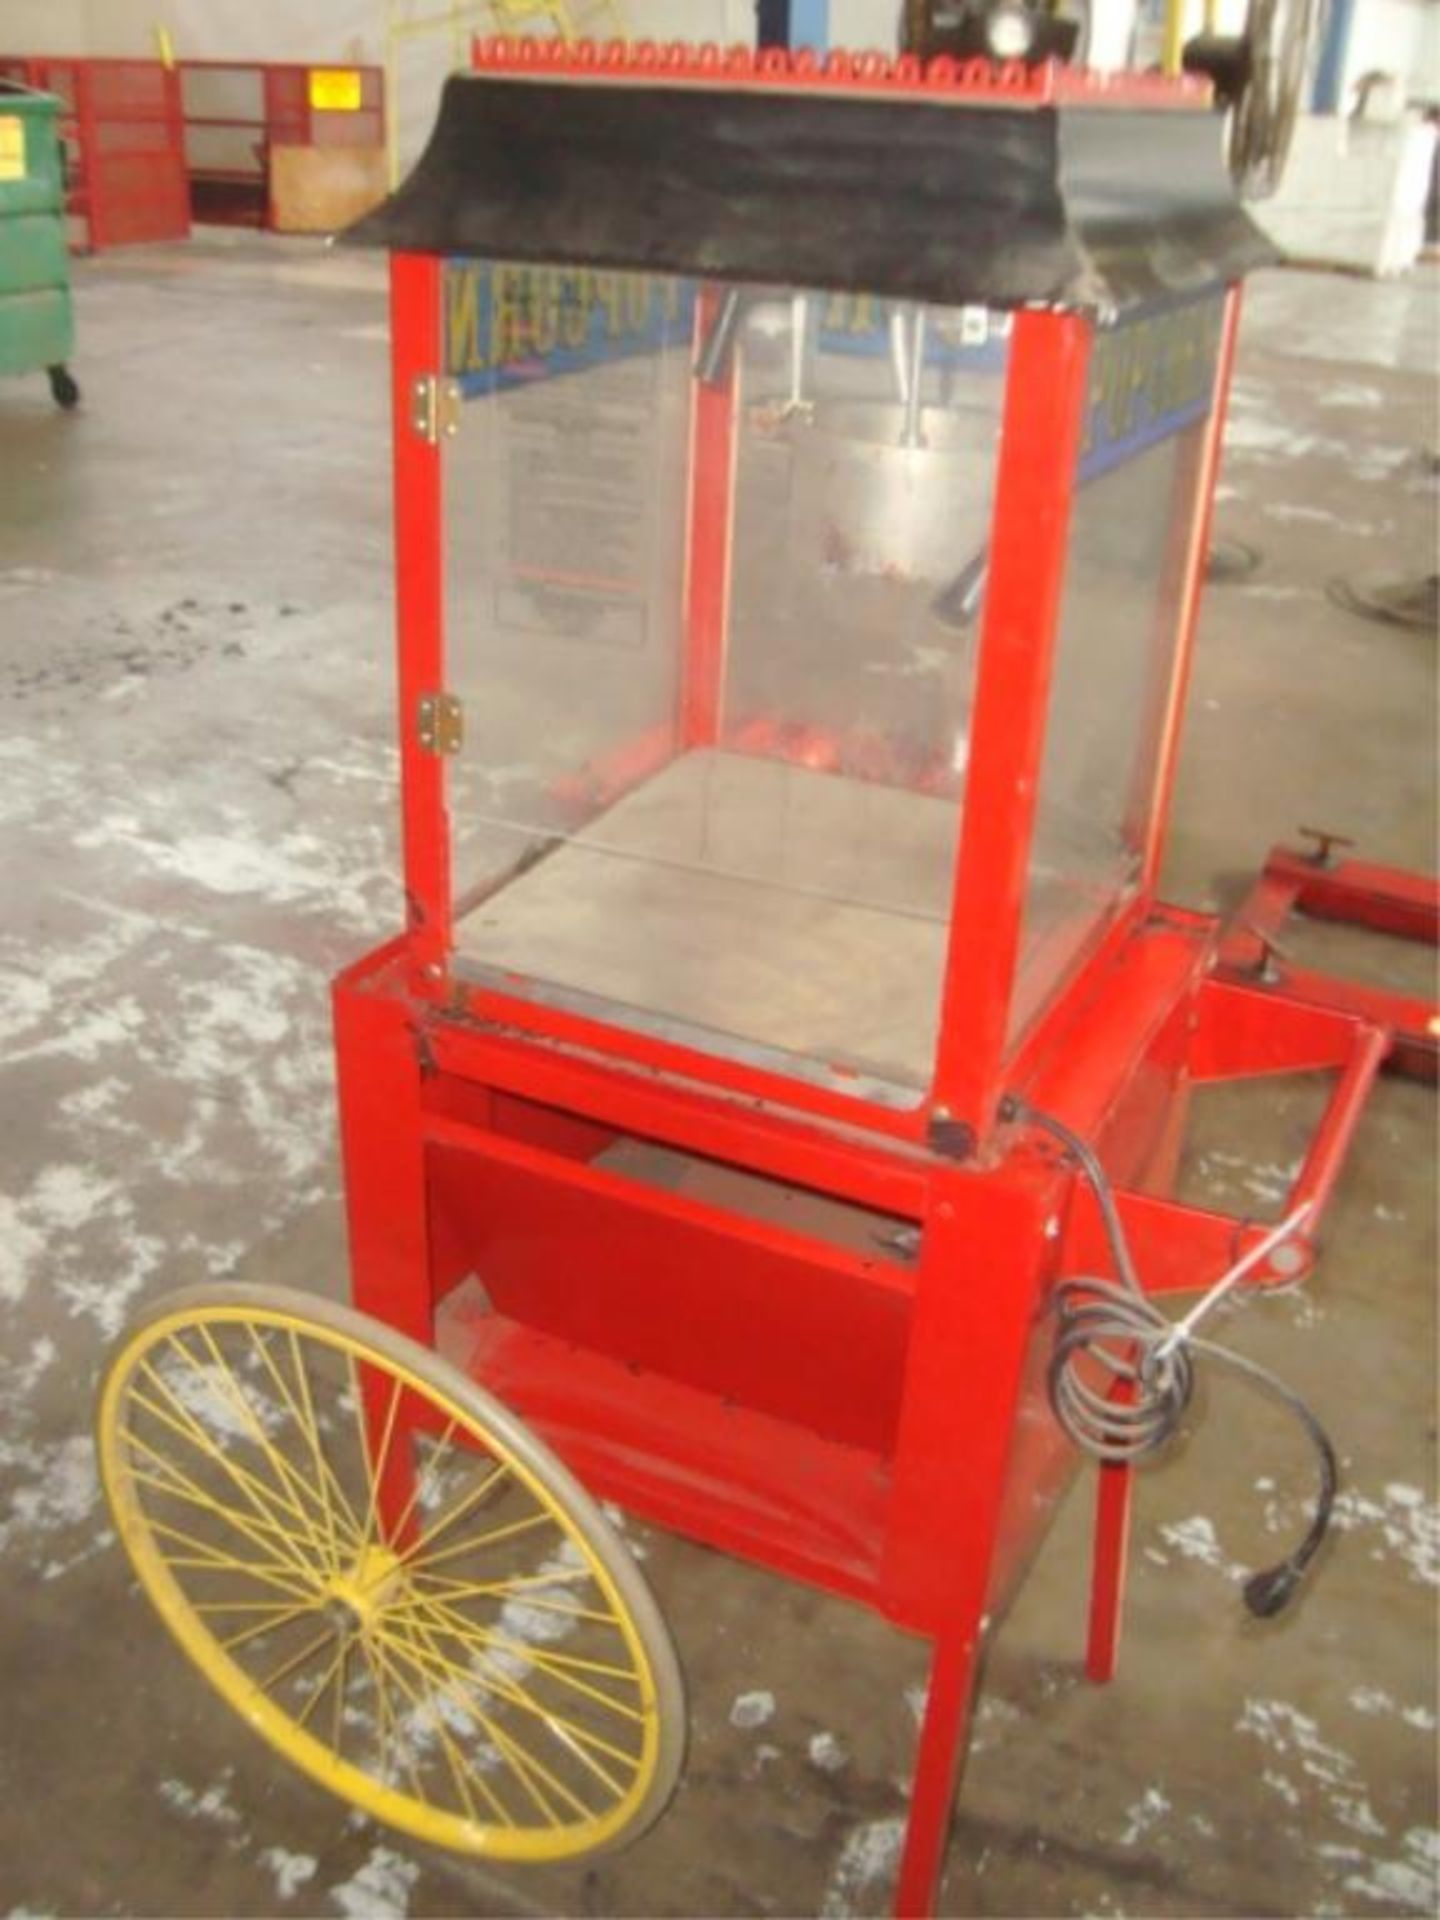 Kettle Popcorn Maker Carts - Image 10 of 11